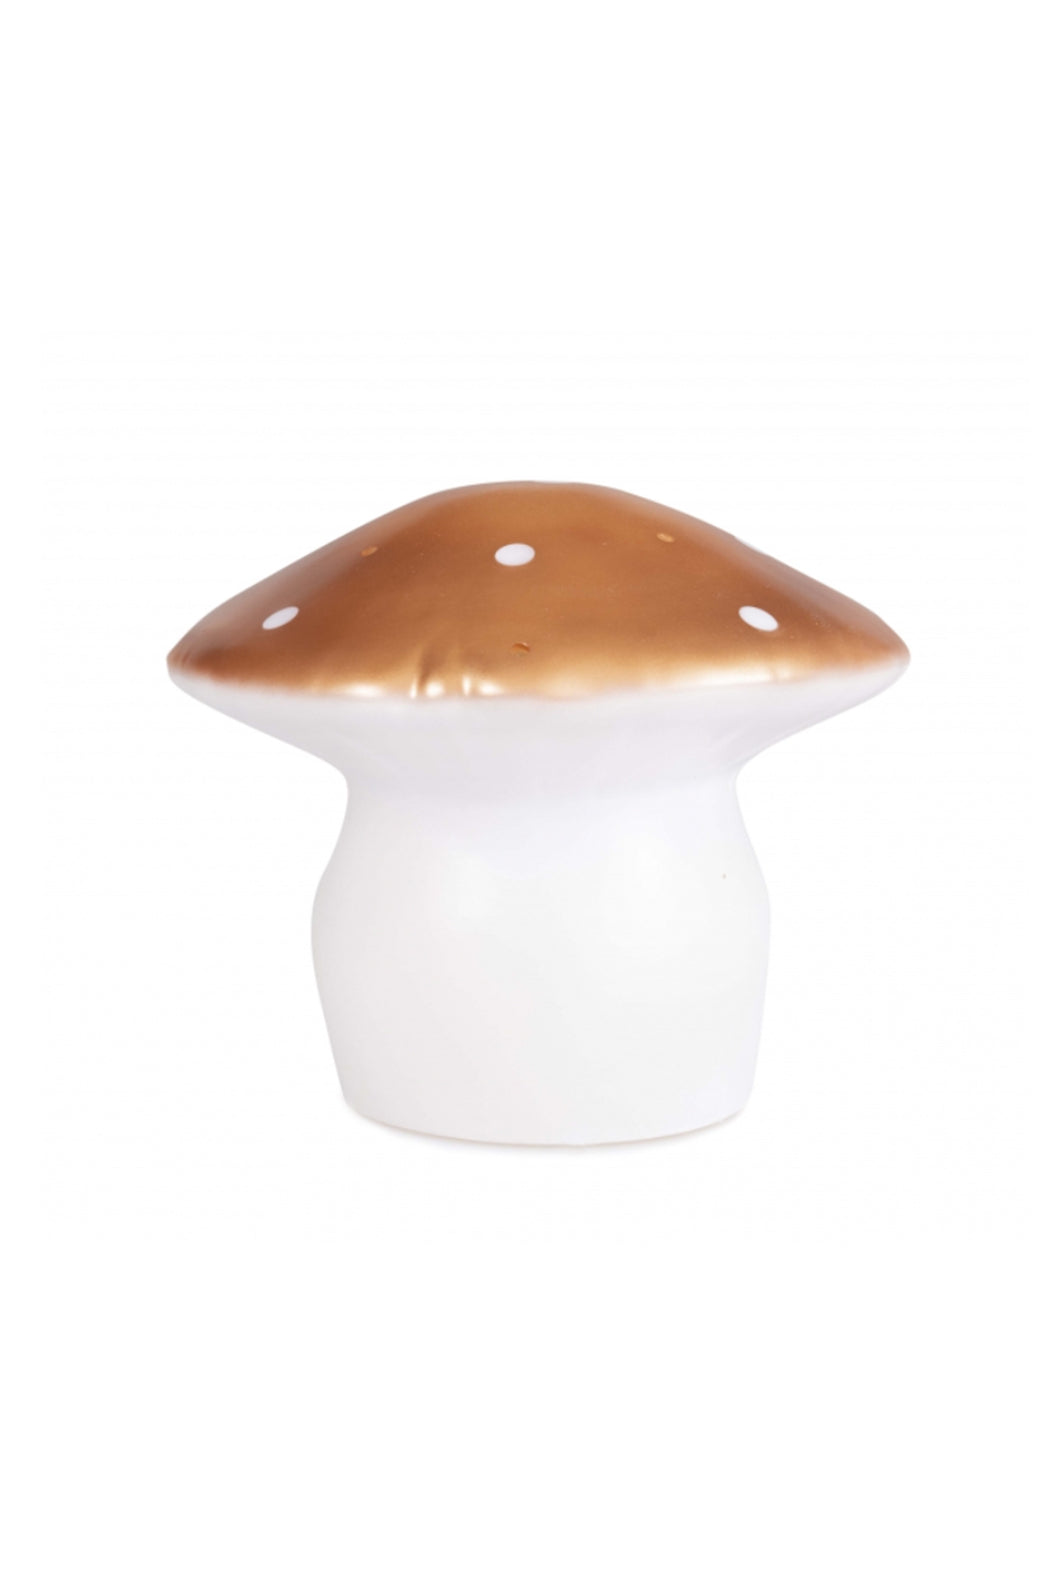 Egmont Toys Medium Mushroom Lamp - Copper